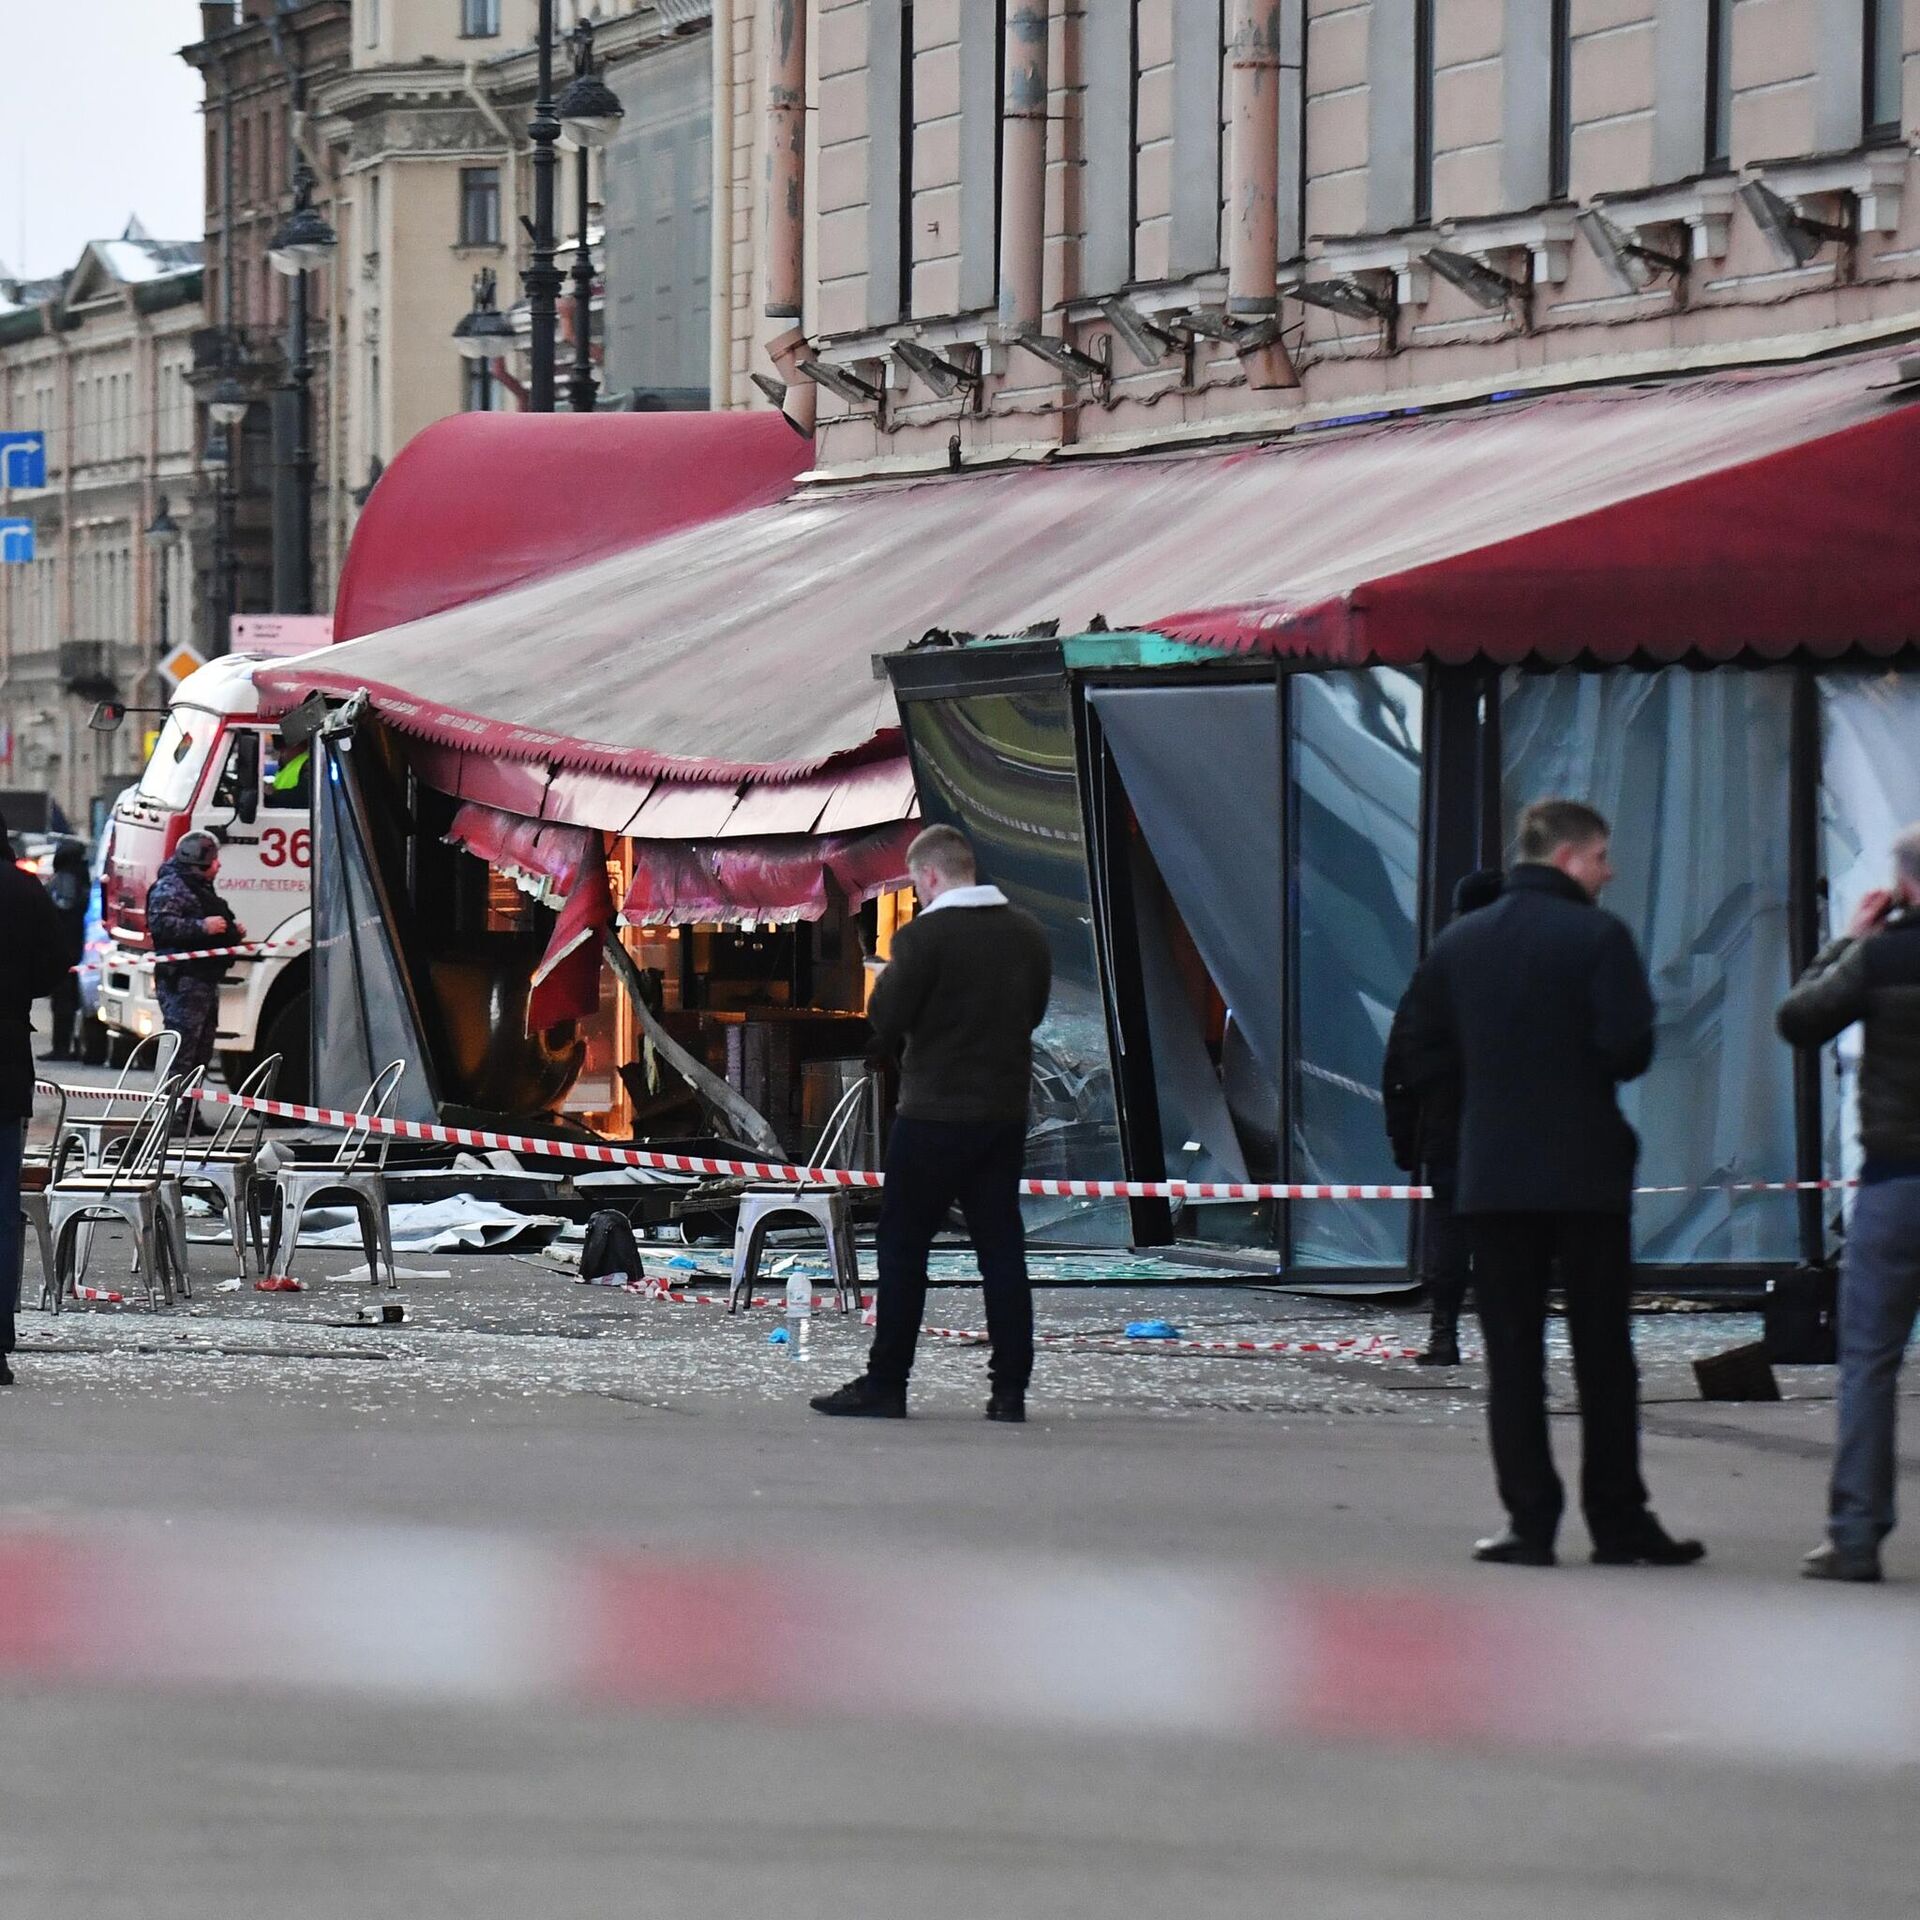 Теракт вчера в питере. Взорвали кафе в Санкт-Петербурге 2 апреля. Теракт в Санкт Петербурге. Теракт в Питере на набережной.